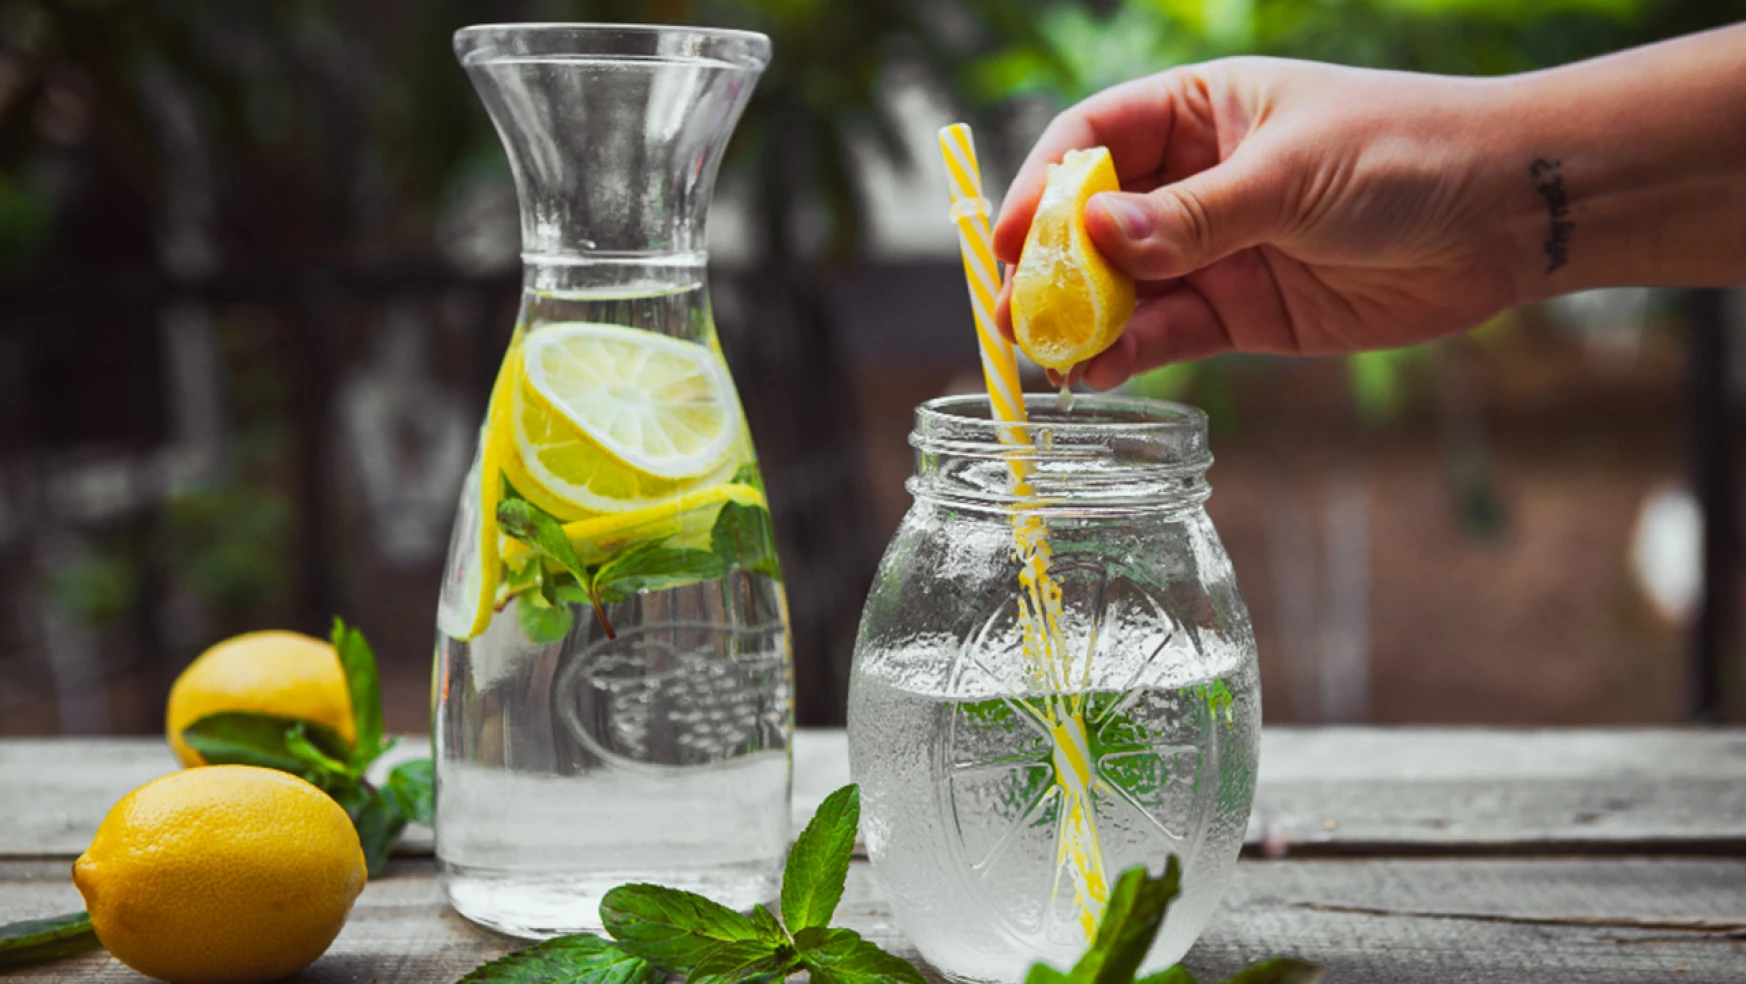 Limon suyu izlenimi veren ürünlerin satışı yasaklandı